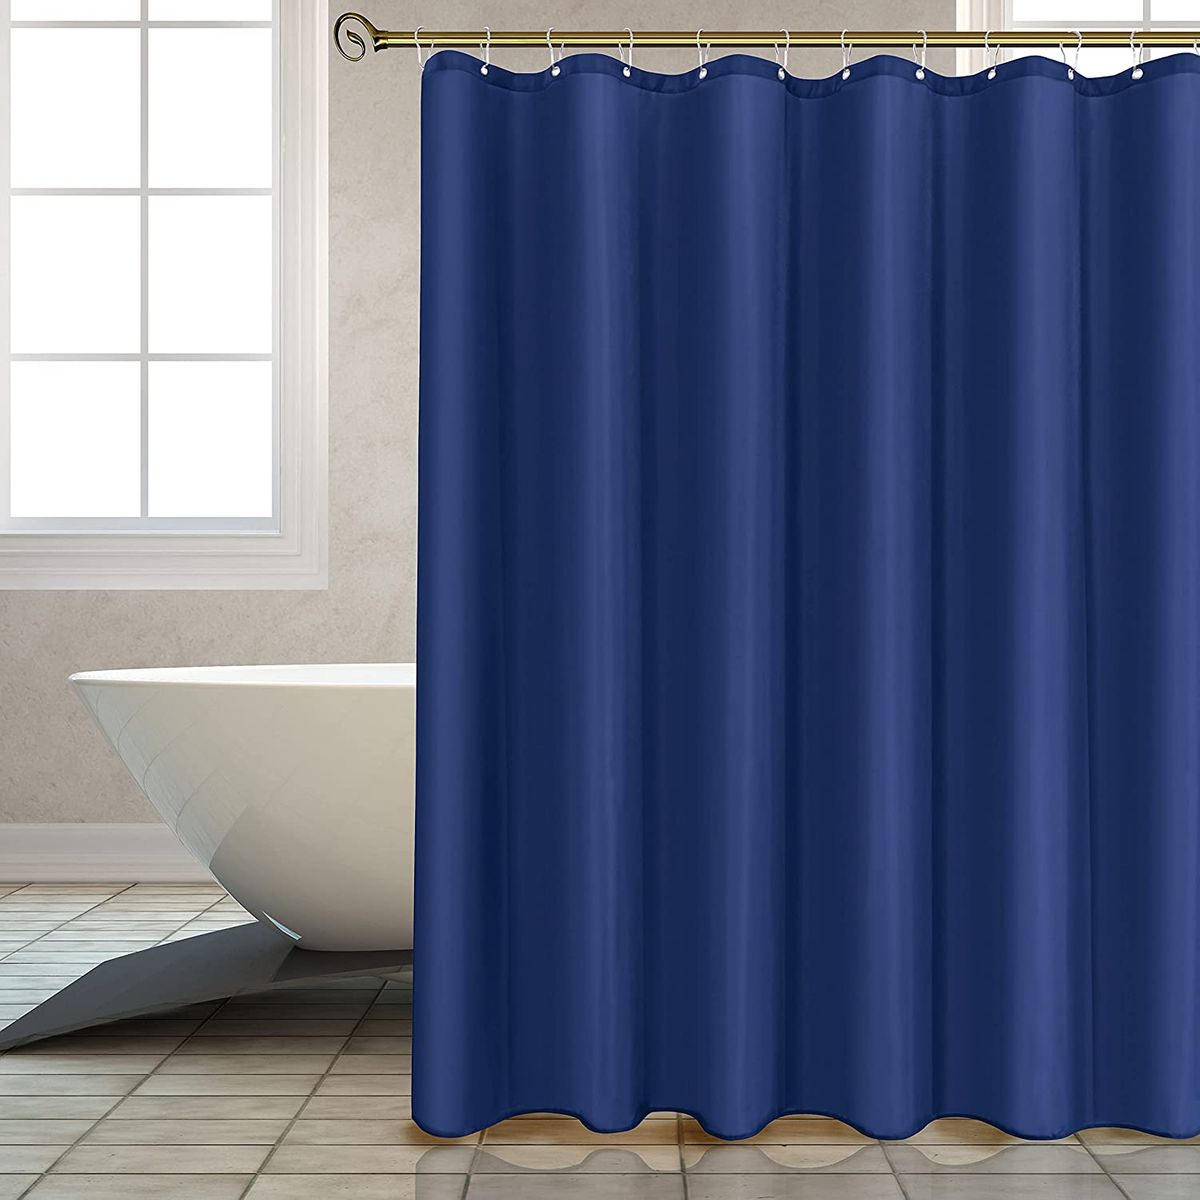 Showerdrape Vision EVA Shower Curtain 